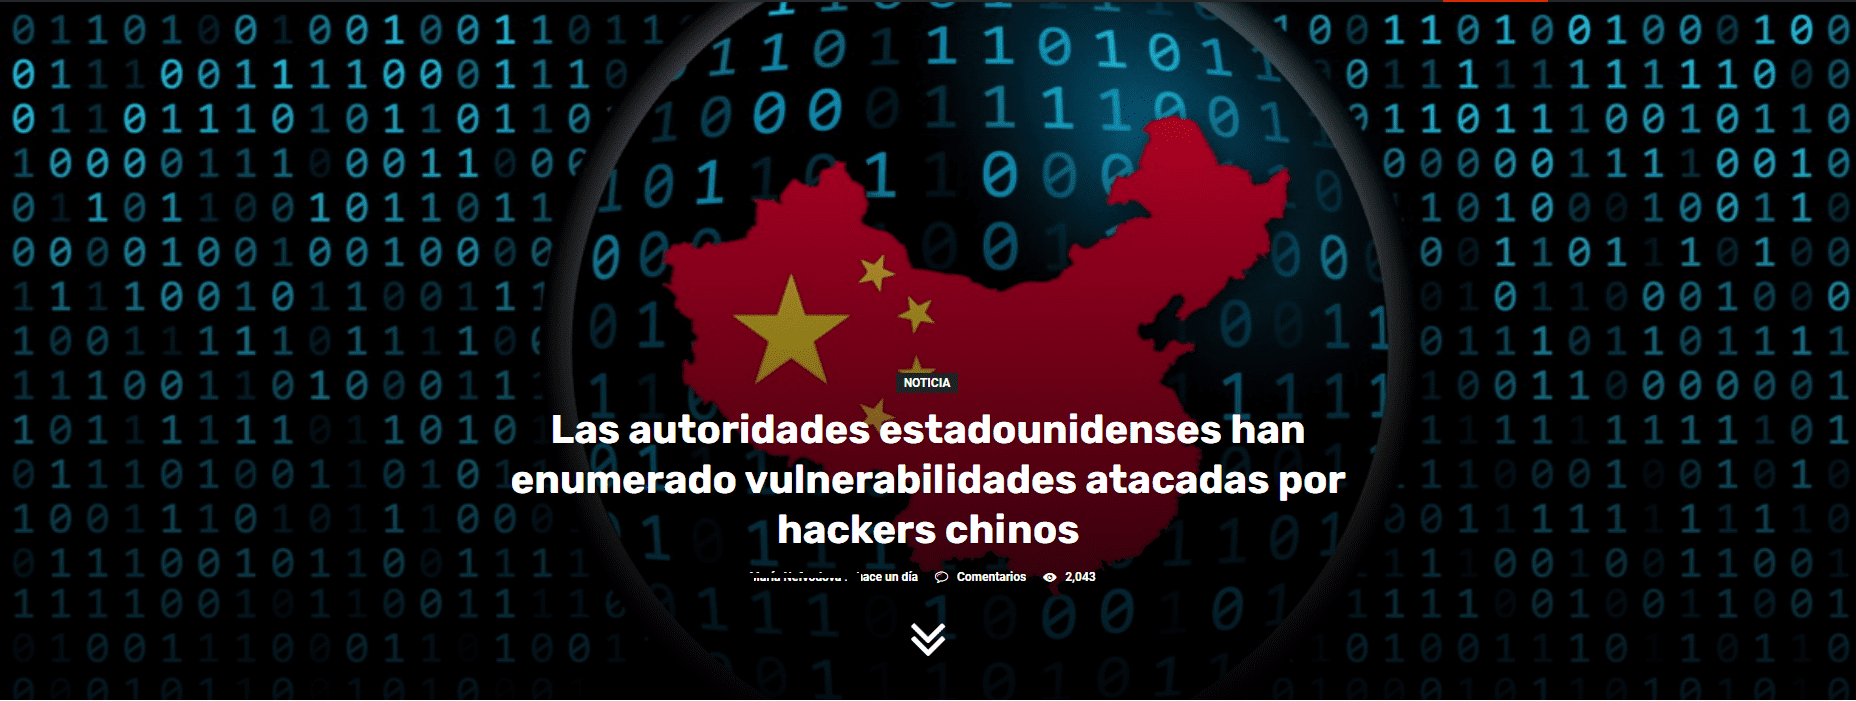 Las autoridades estadounidenses han enumerado vulnerabilidades atacadas por hackers chinos